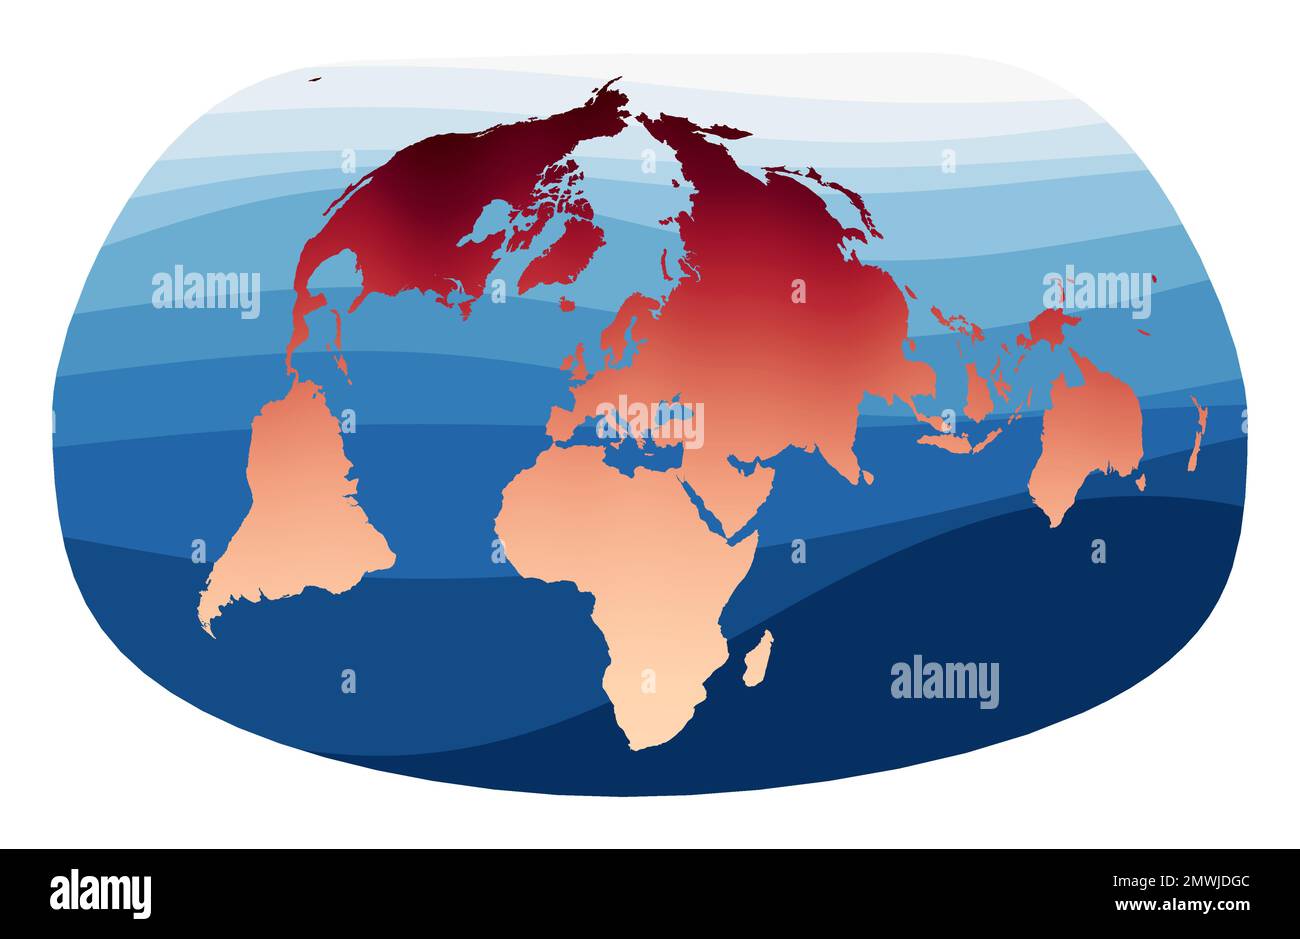 Weltkartenvektor. Jacques Bertins Projektion 1953. Welt in rot-orangefarbenem Farbverlauf auf tiefen blauen Ozeanwellen. Charmante Vektordarstellung. Stock Vektor